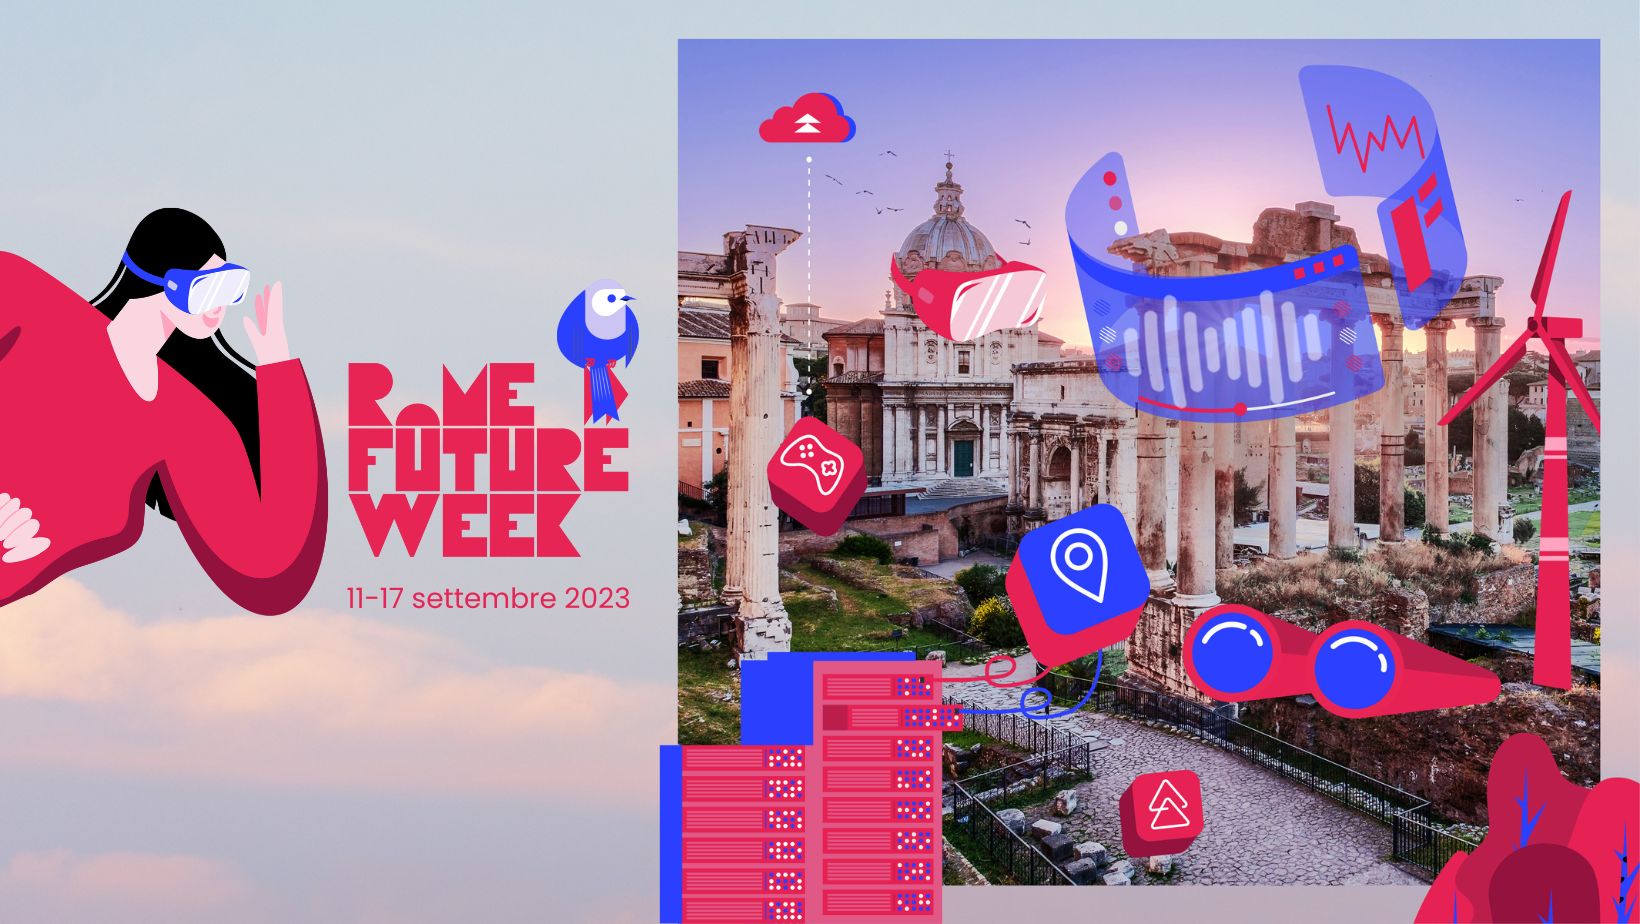 UnitelmaSapienza partecipa alla Rome Future Week con un incontro sulla realtà virtuale